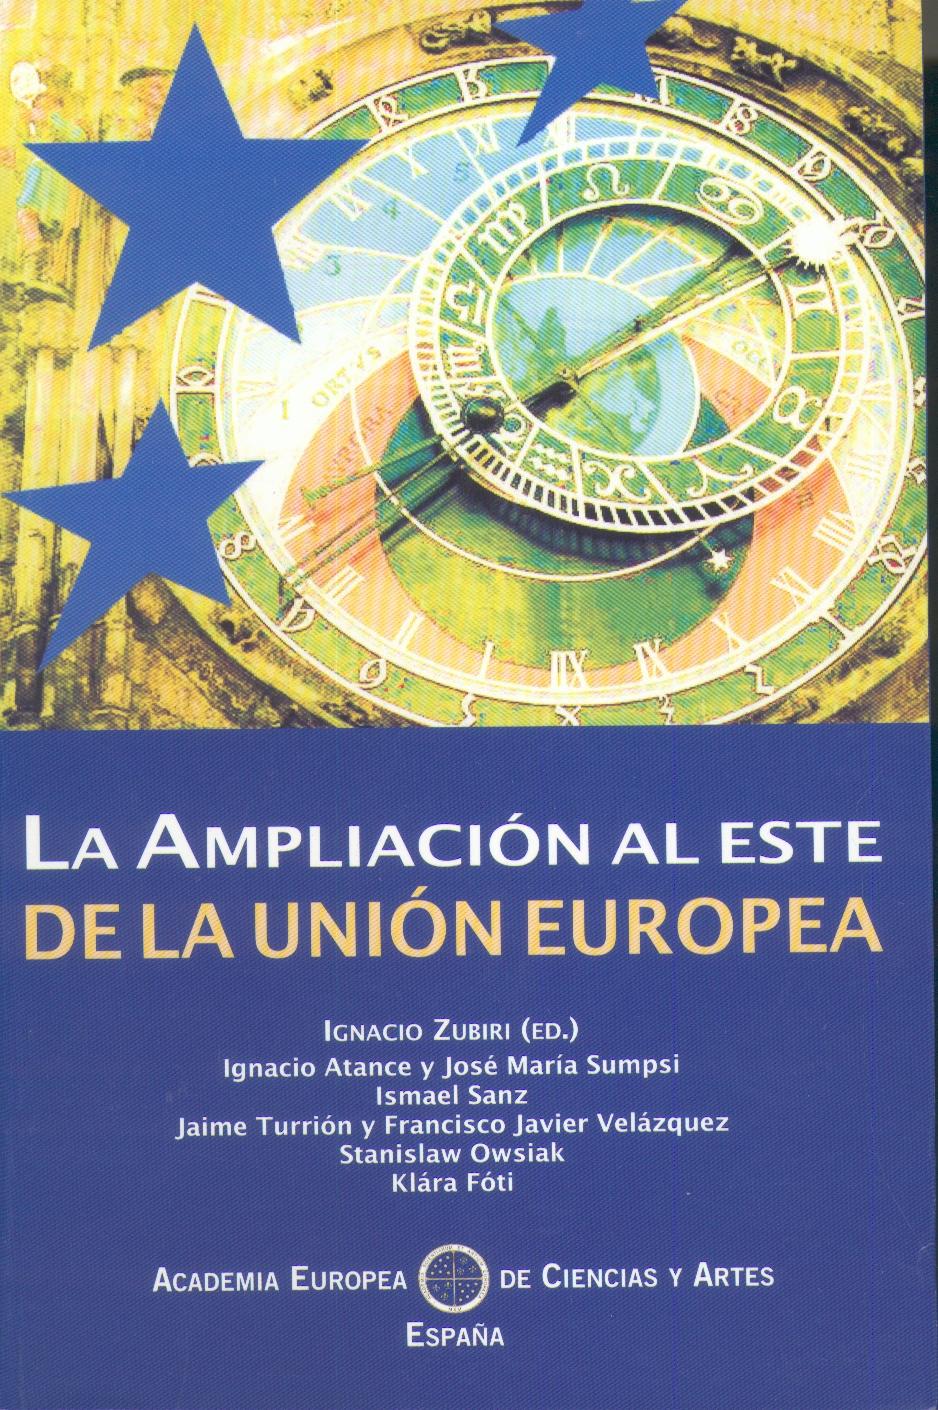 La Ampliacion al Este de la Union Europea.